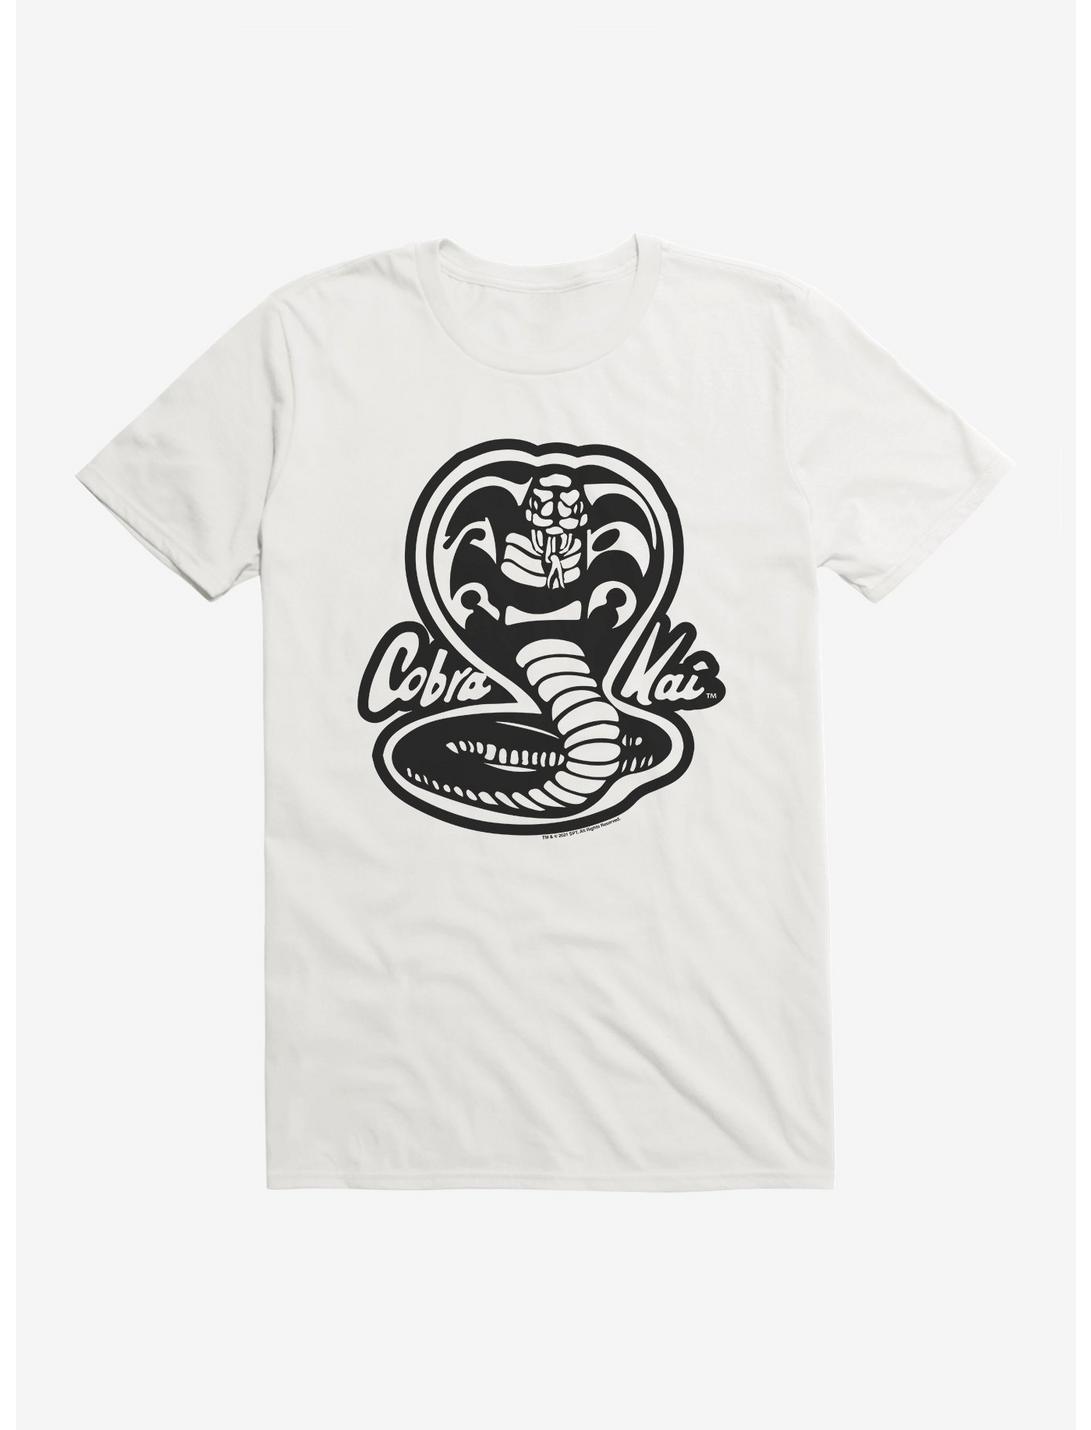 Cobra Kai Black And White Logo T-Shirt, WHITE, hi-res